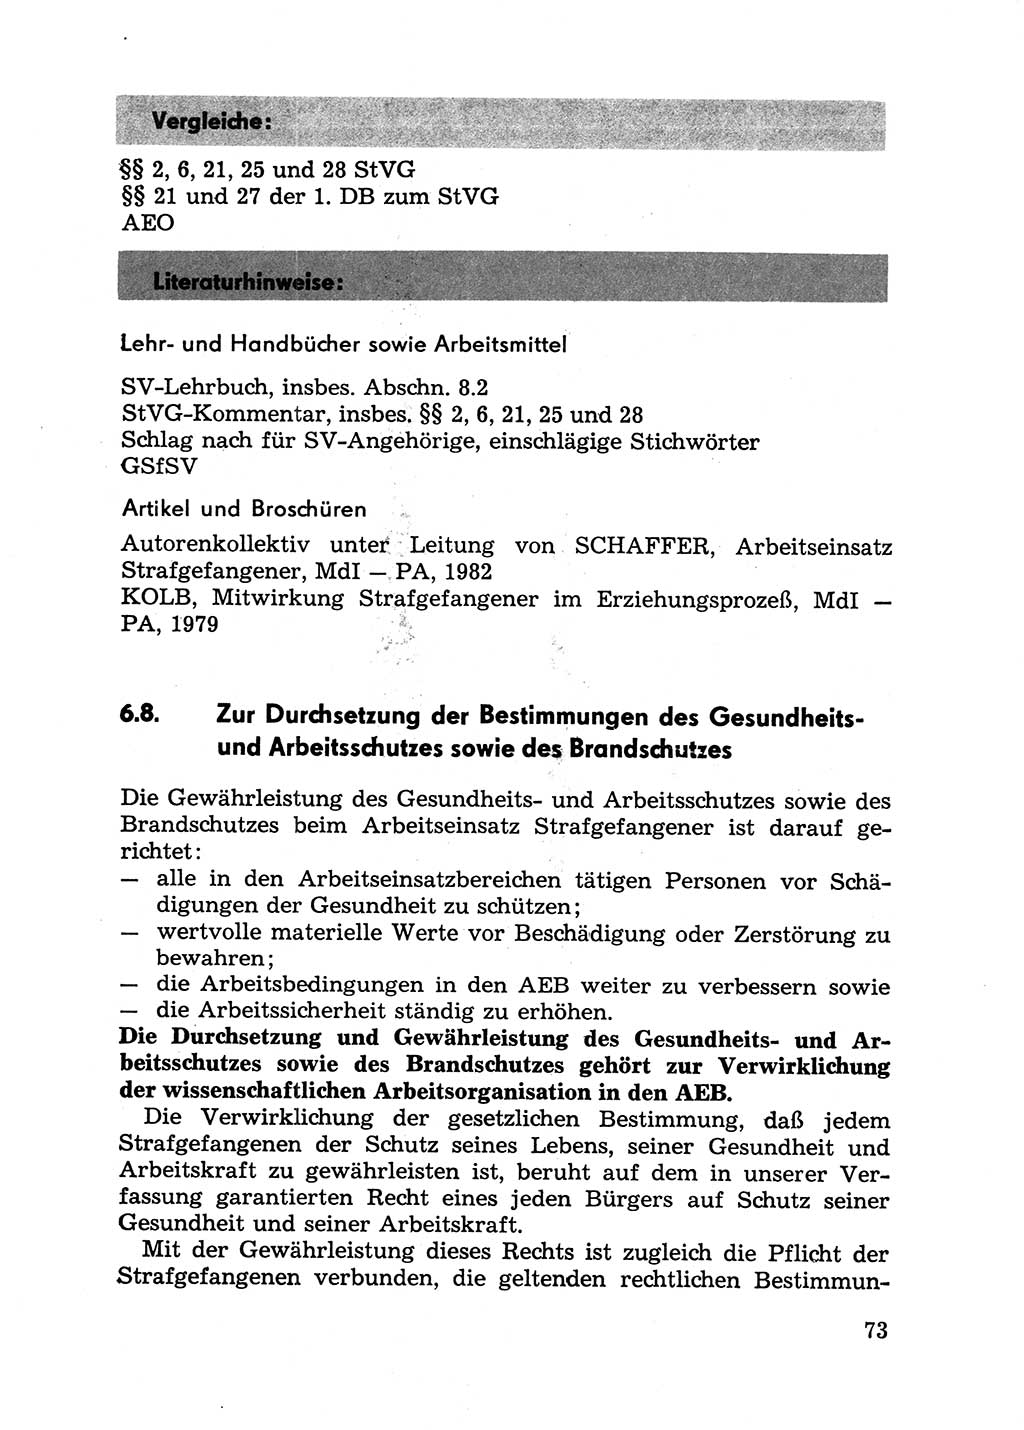 Handbuch für Betriebsangehörige, Abteilung Strafvollzug (SV) [Ministerium des Innern (MdI) Deutsche Demokratische Republik (DDR)] 1981, Seite 73 (Hb. BA Abt. SV MdI DDR 1981, S. 73)